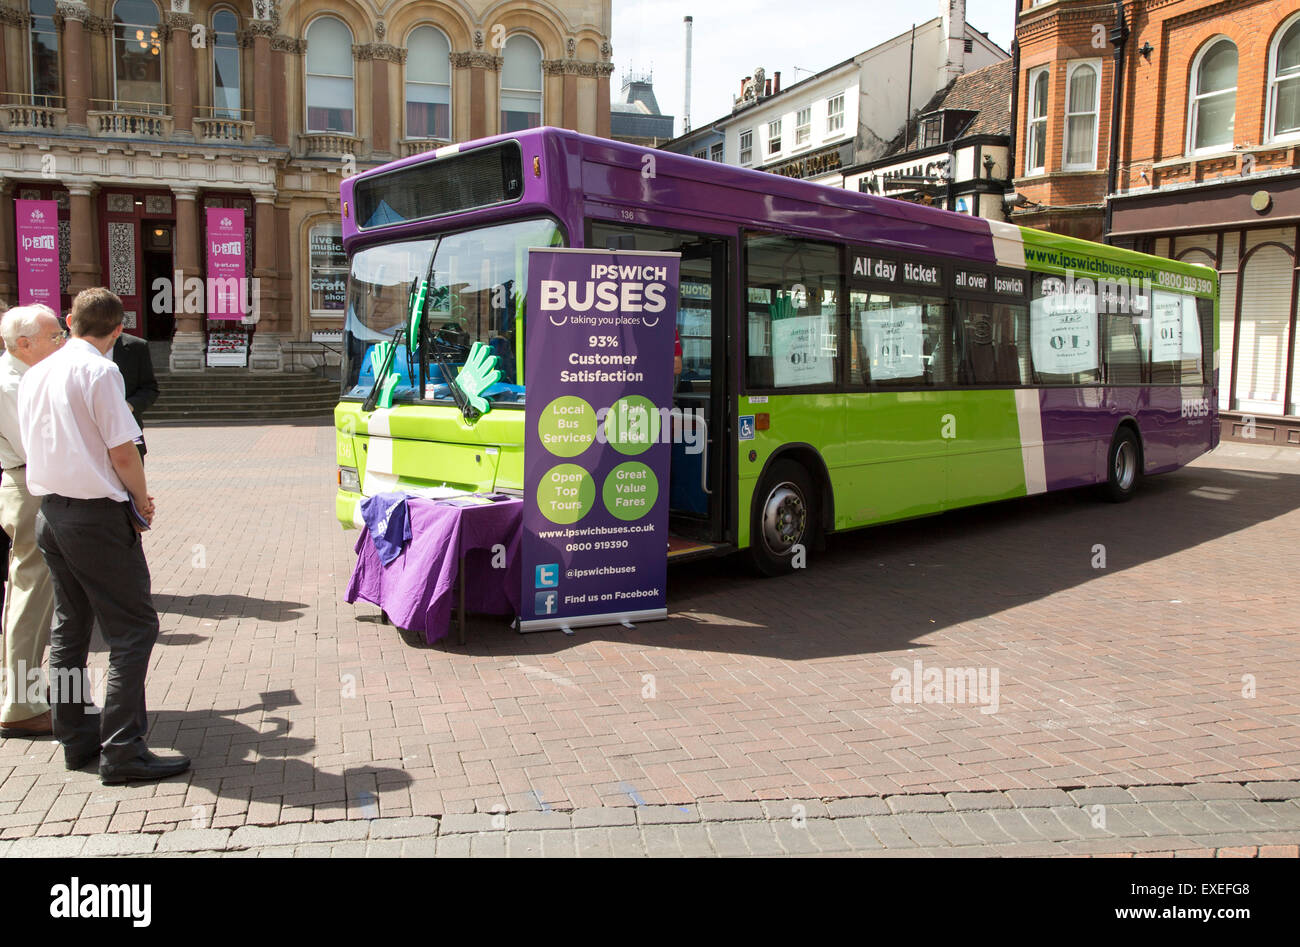 Promozione pubblica pubblicità evento per servizio di autobus nel centro di Ipswich, Suffolk, Inghilterra, Regno Unito Foto Stock